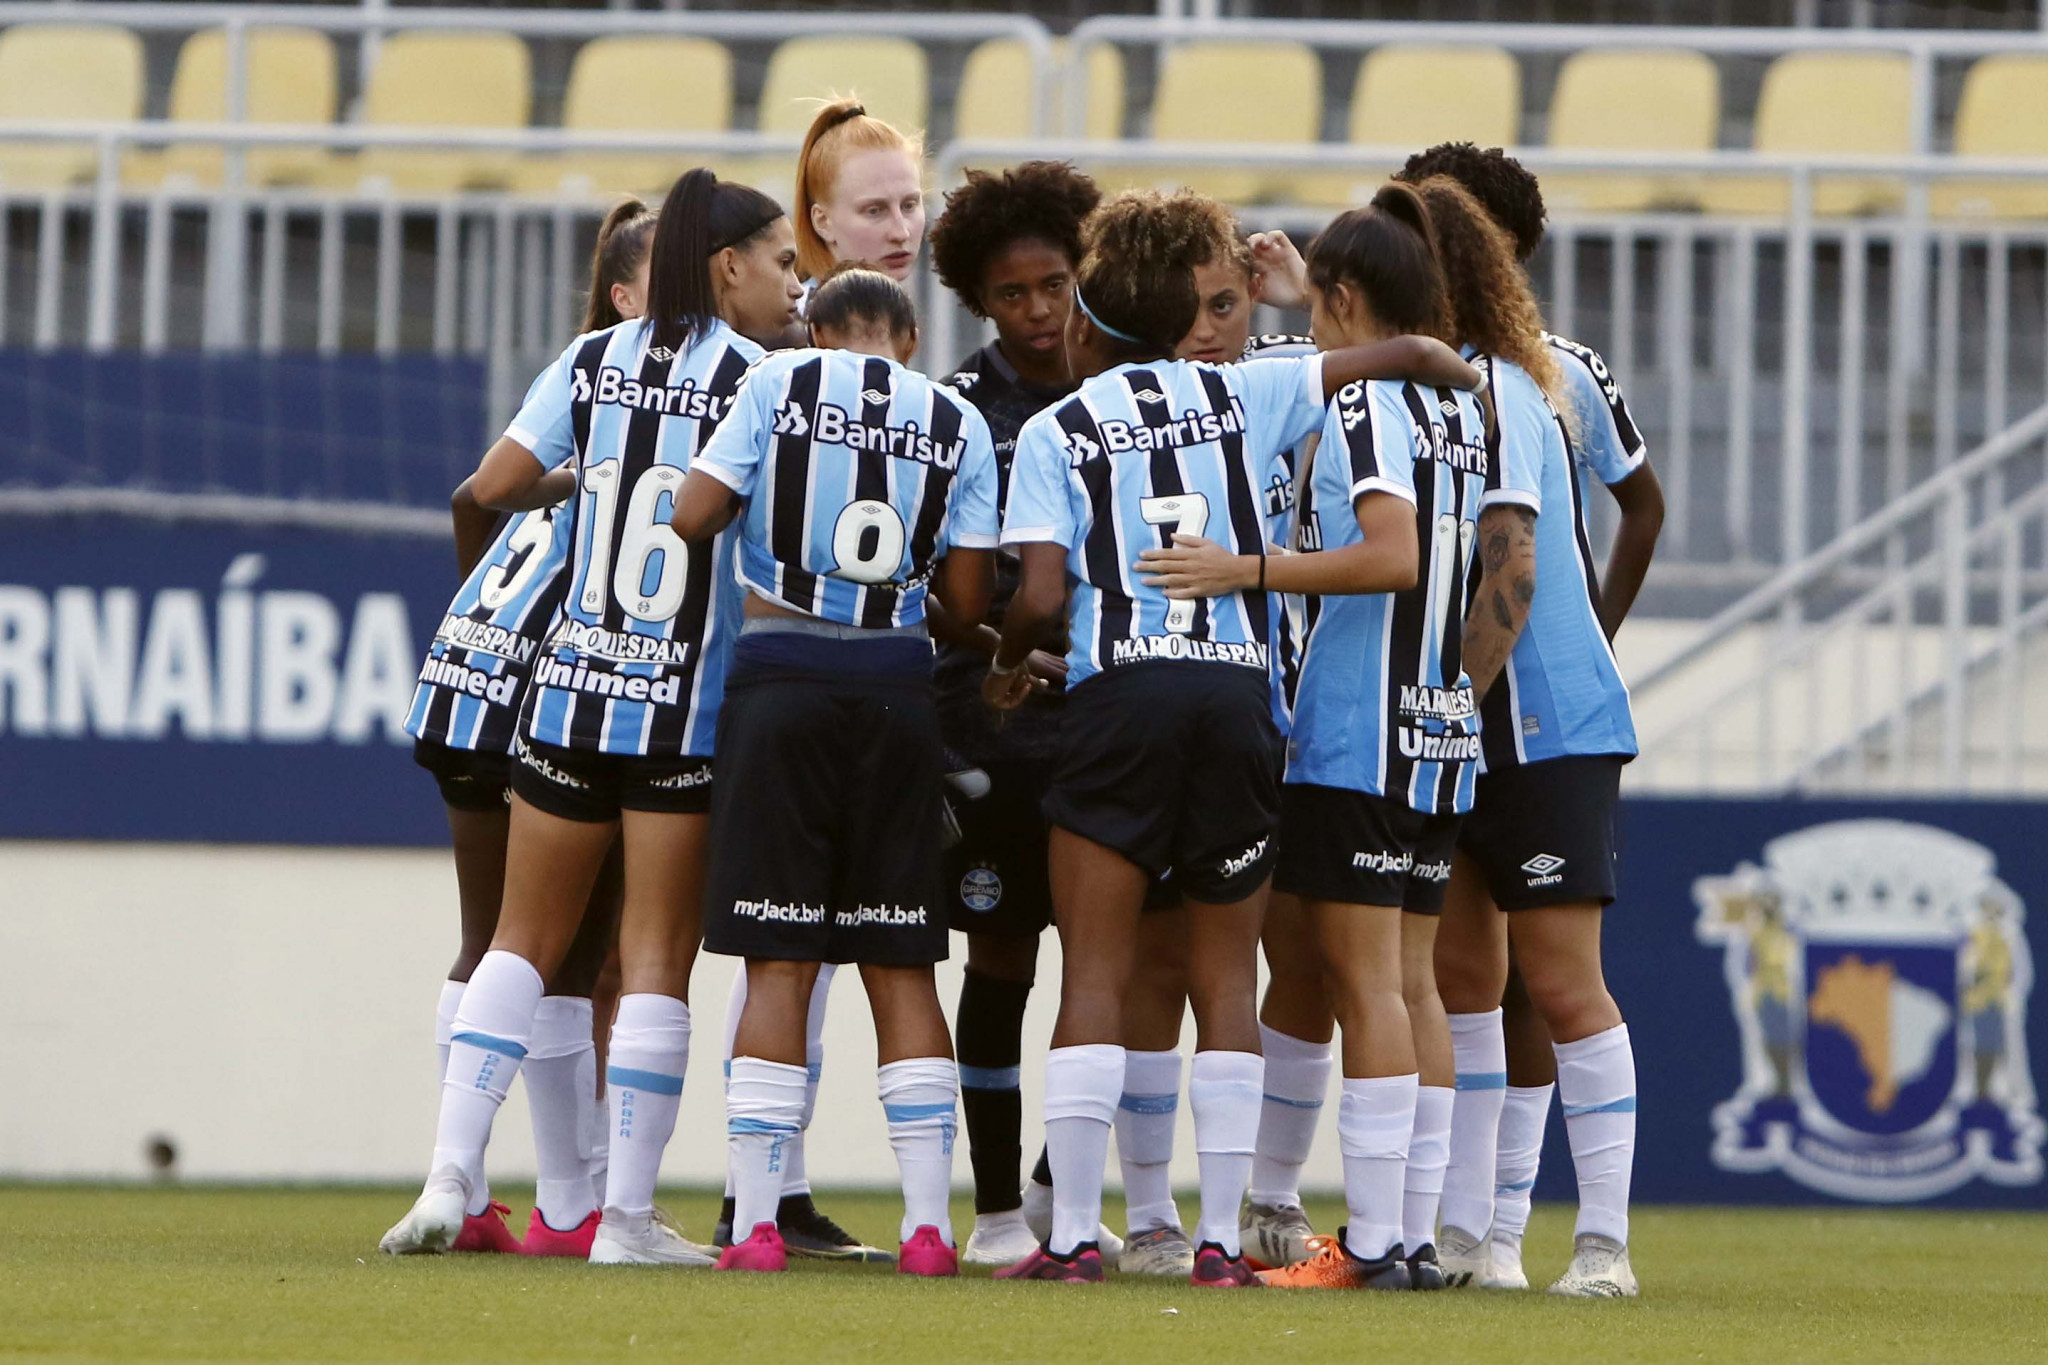 CBF divulga tabela do Brasileirão Feminino Sub-20